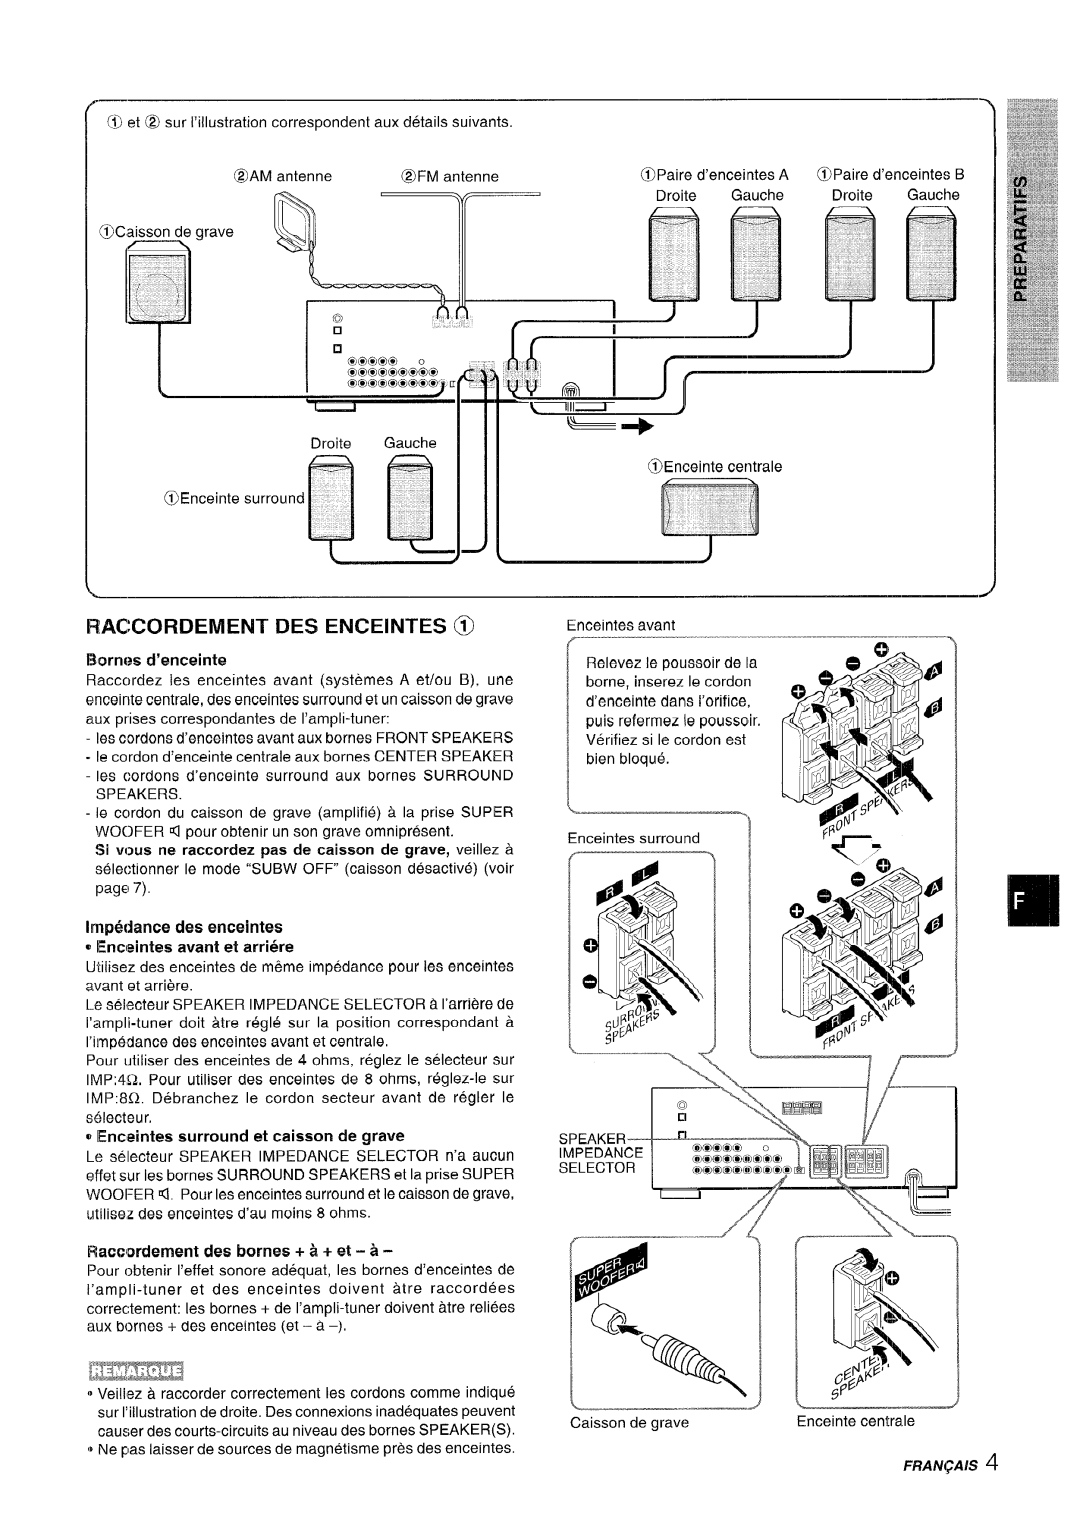 Sony AV-DV75 manual Raccordement Des Enceintes, Racwordernent des bcwnes + & + et - a 